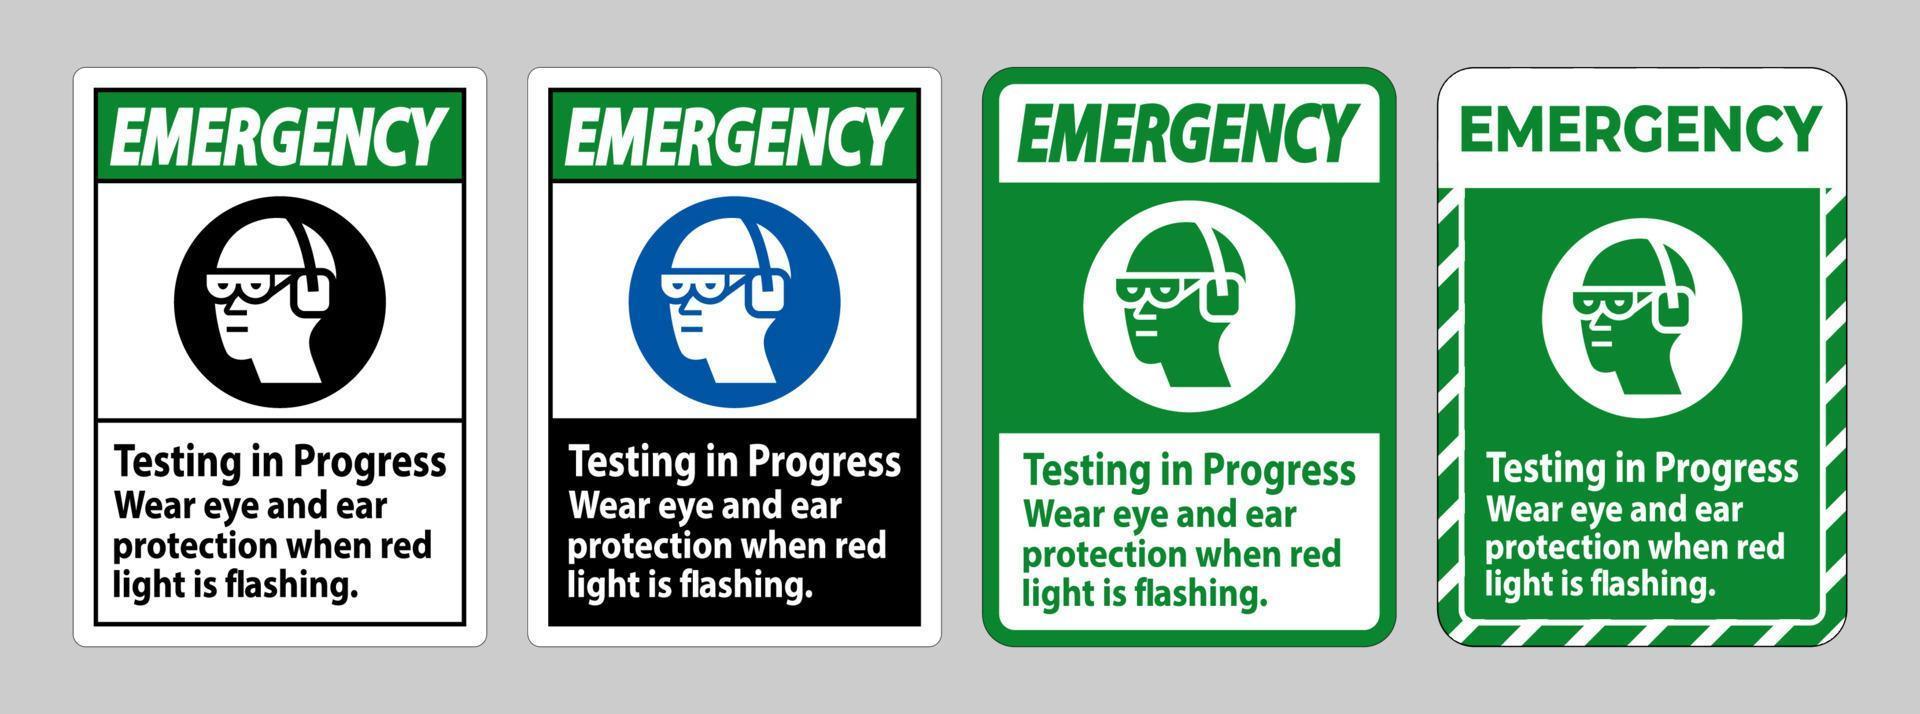 prueba de señalización de emergencia en curso, use protección para los ojos y los oídos cuando la luz roja parpadee vector